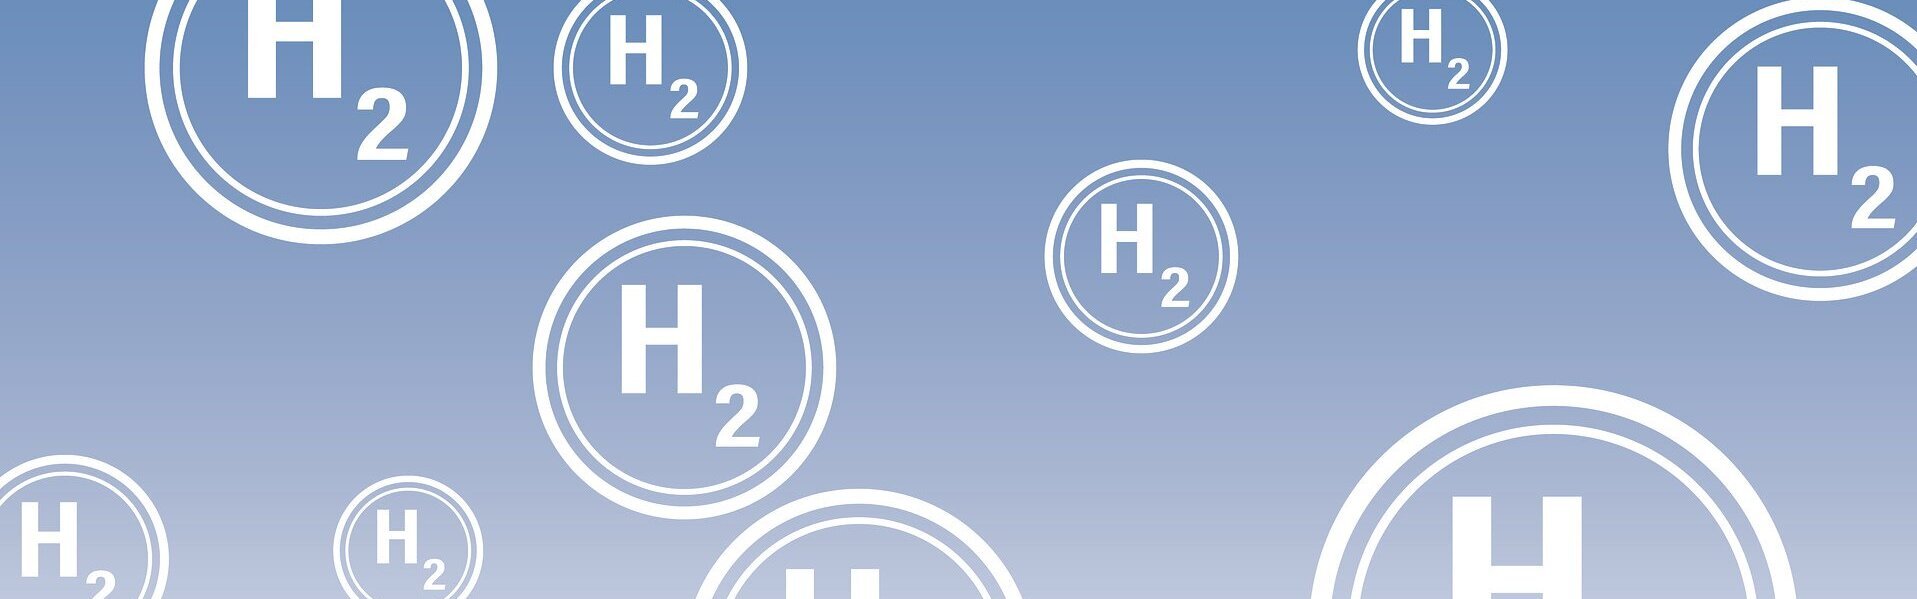 Das Bild zeigt das H2 Molekül